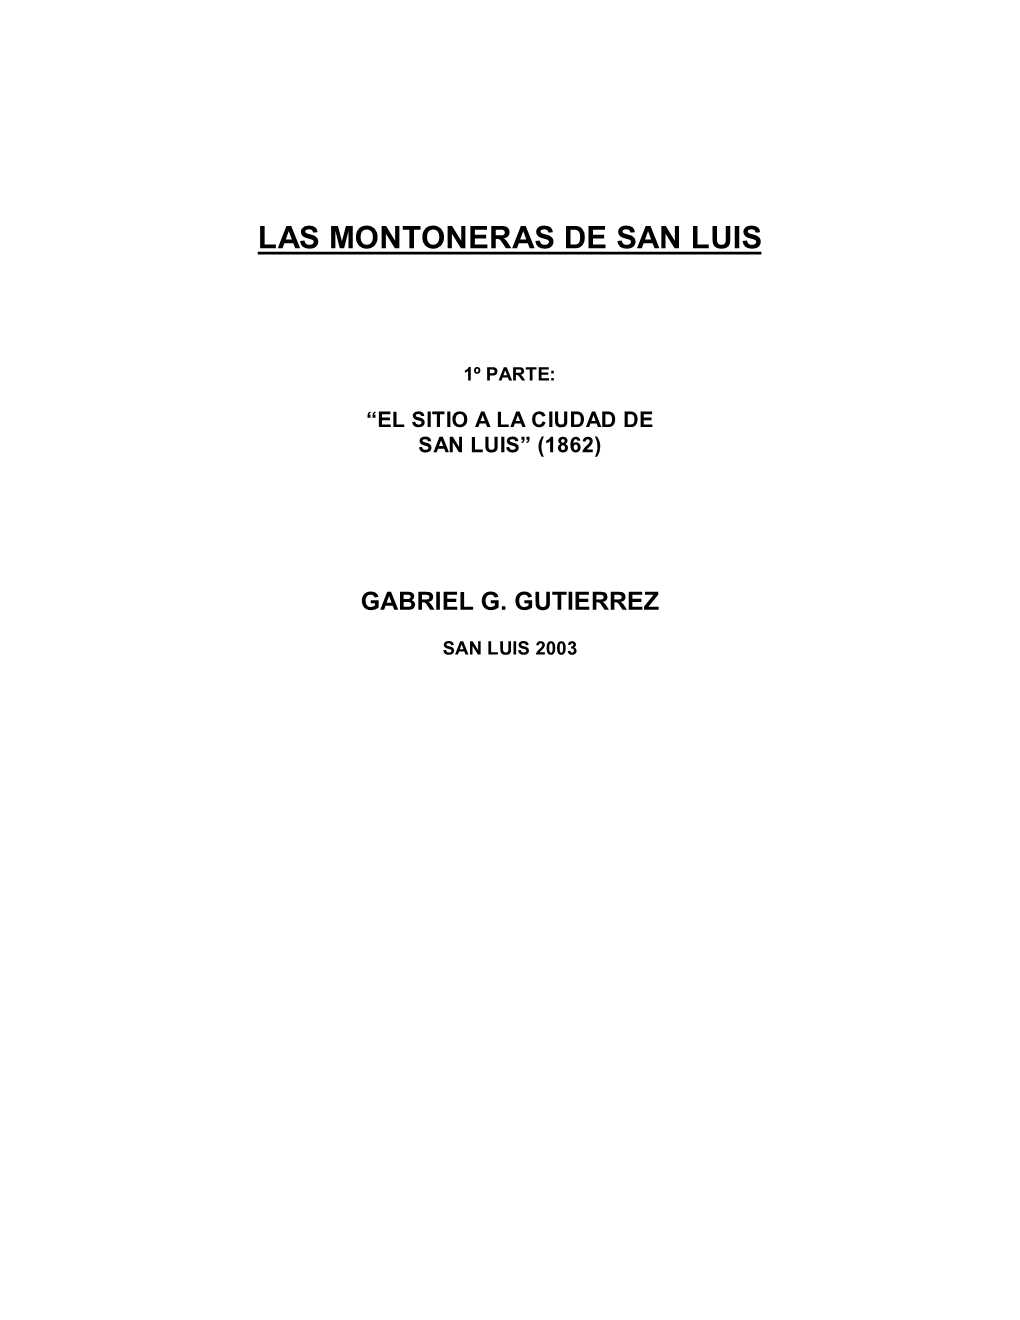 Las Montoneras De San Luis